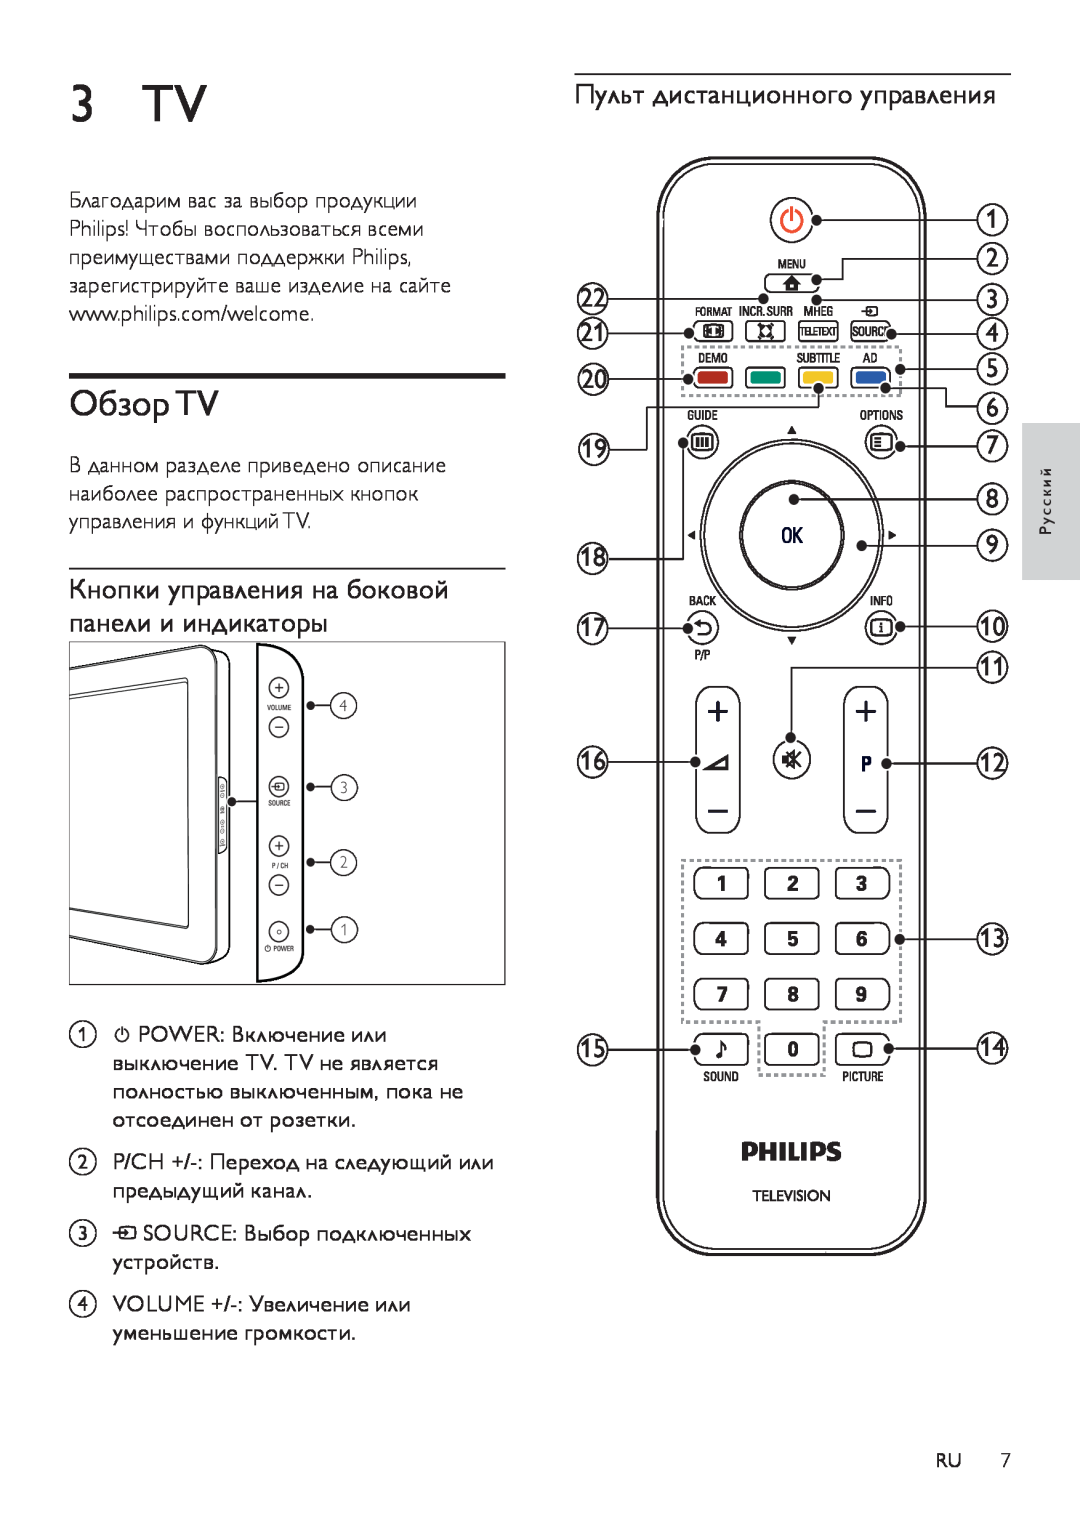 Philips 42PFL3404/60 3 TV, Обзор TV, Пульт дистанционного управления, Кнопки управления на боковой панели и индикаторы 